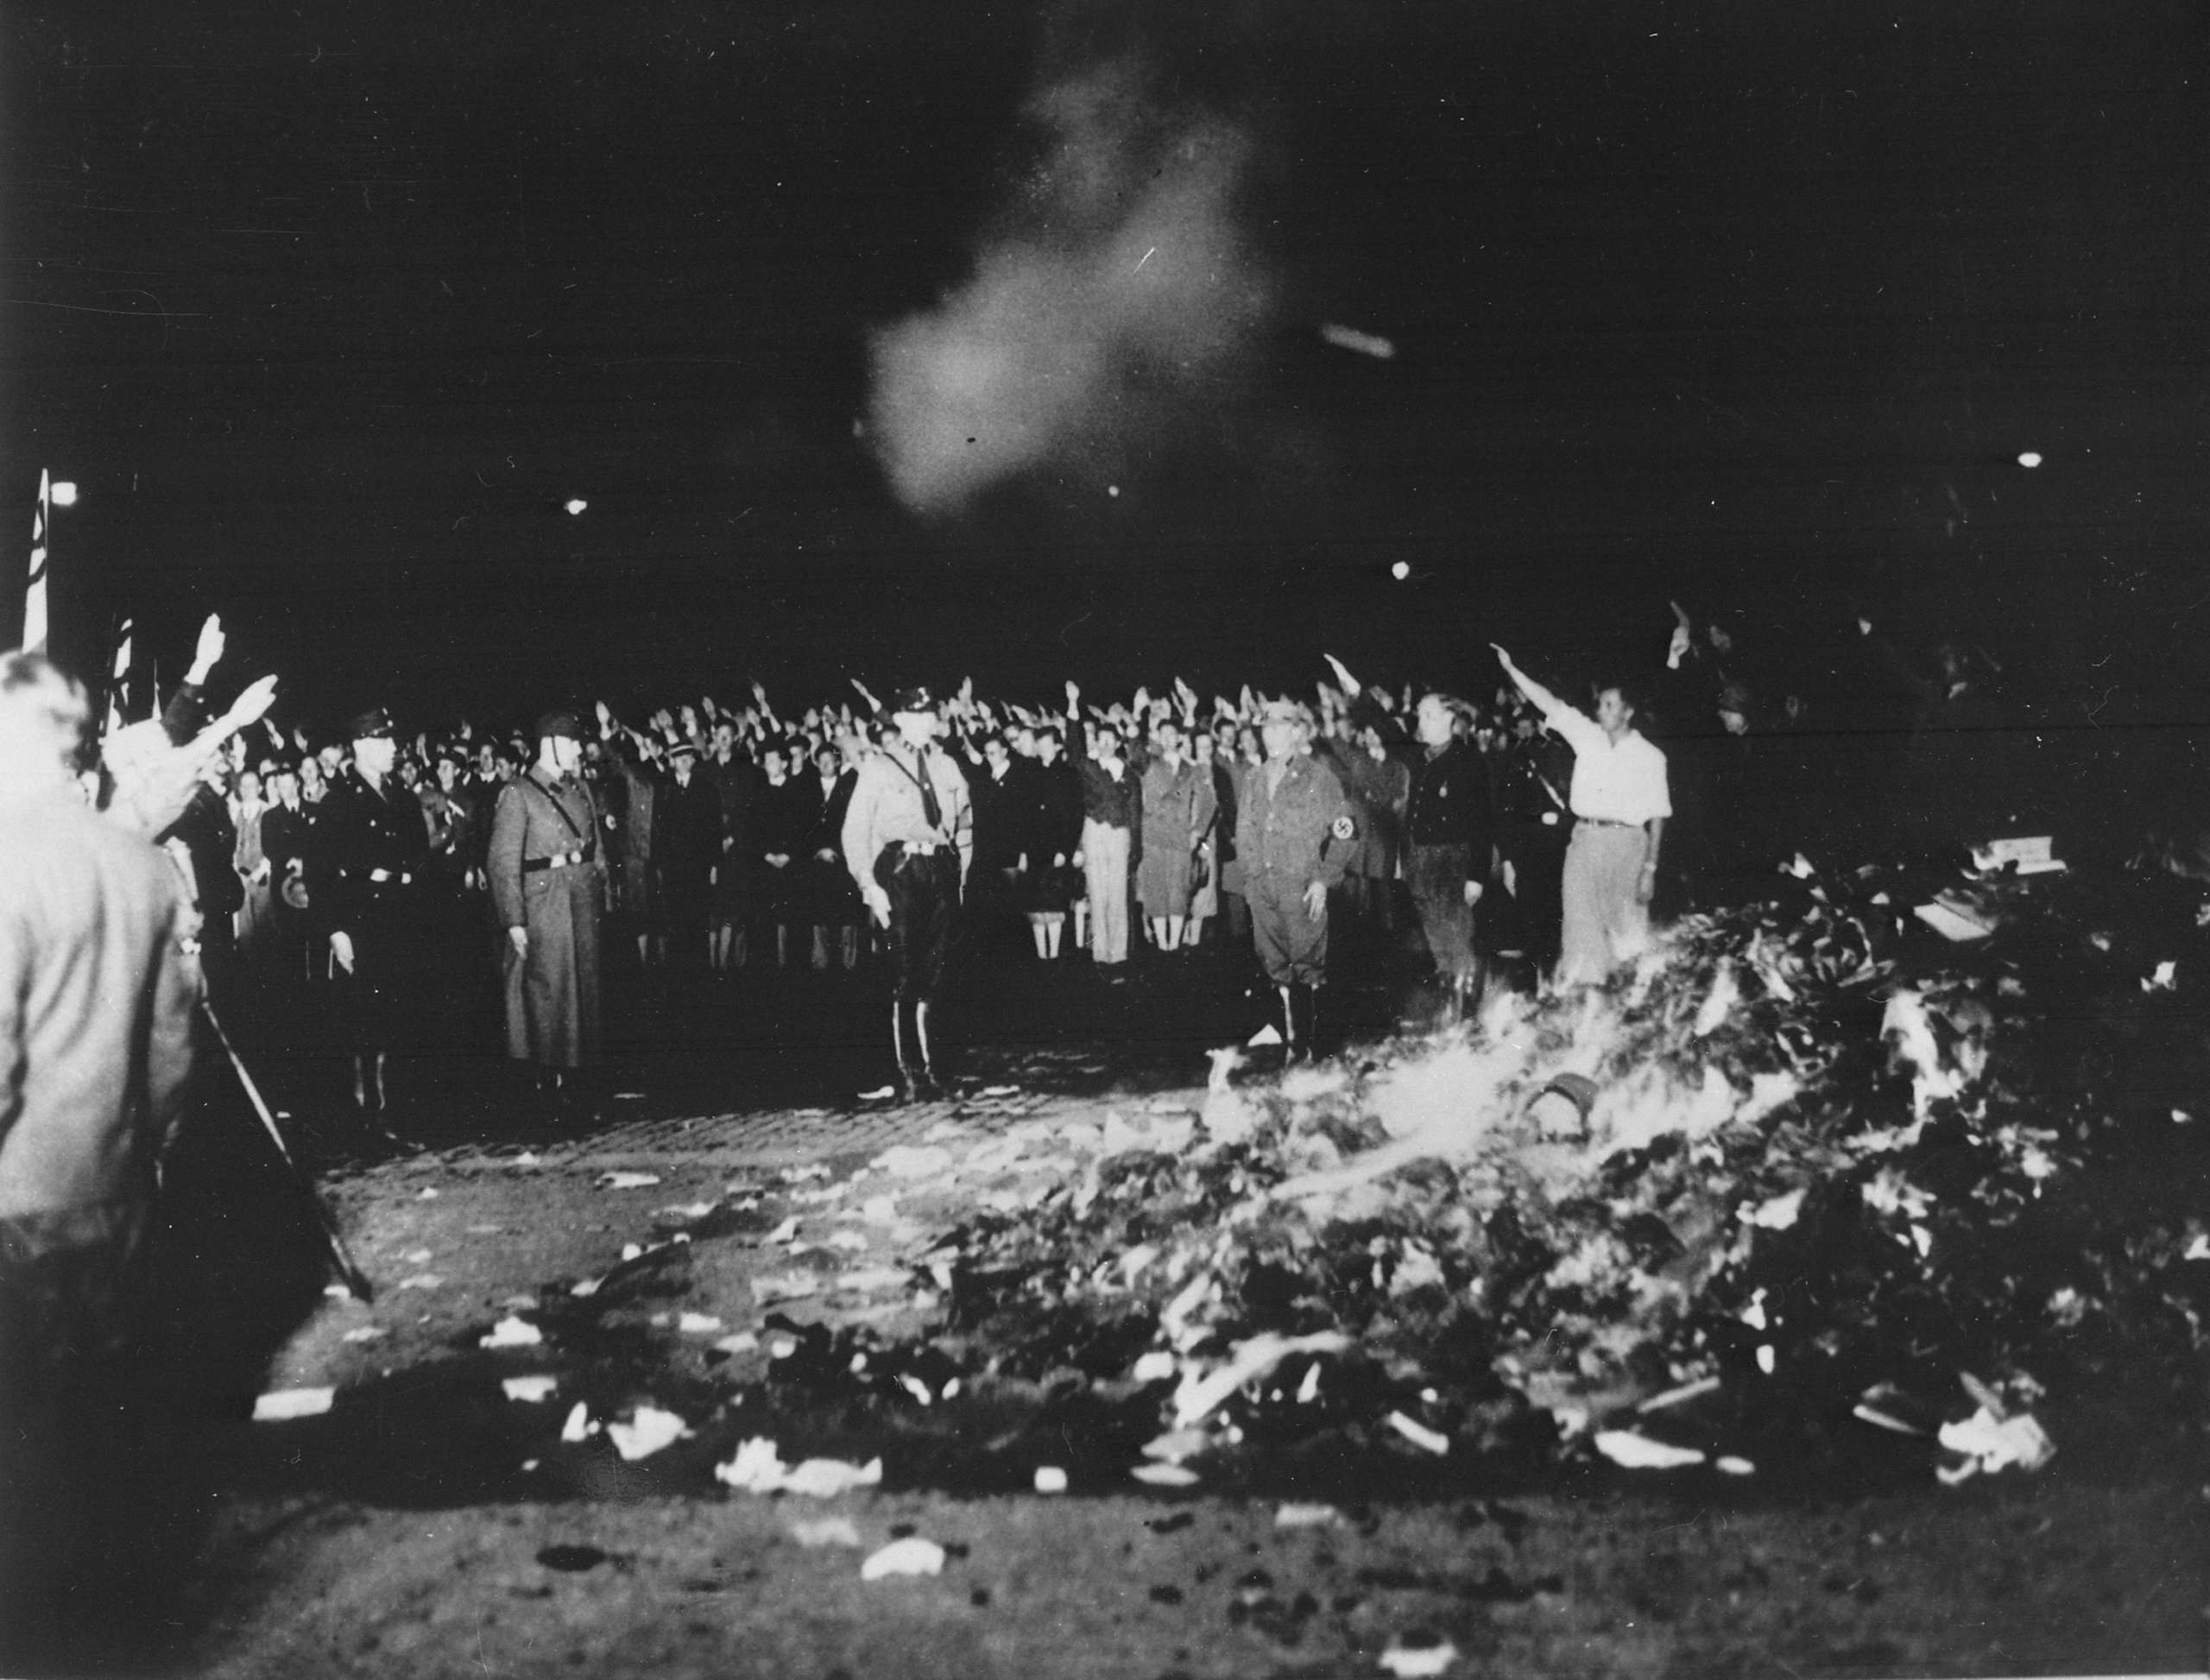 Book burning in Berlin, Germany, 1933.